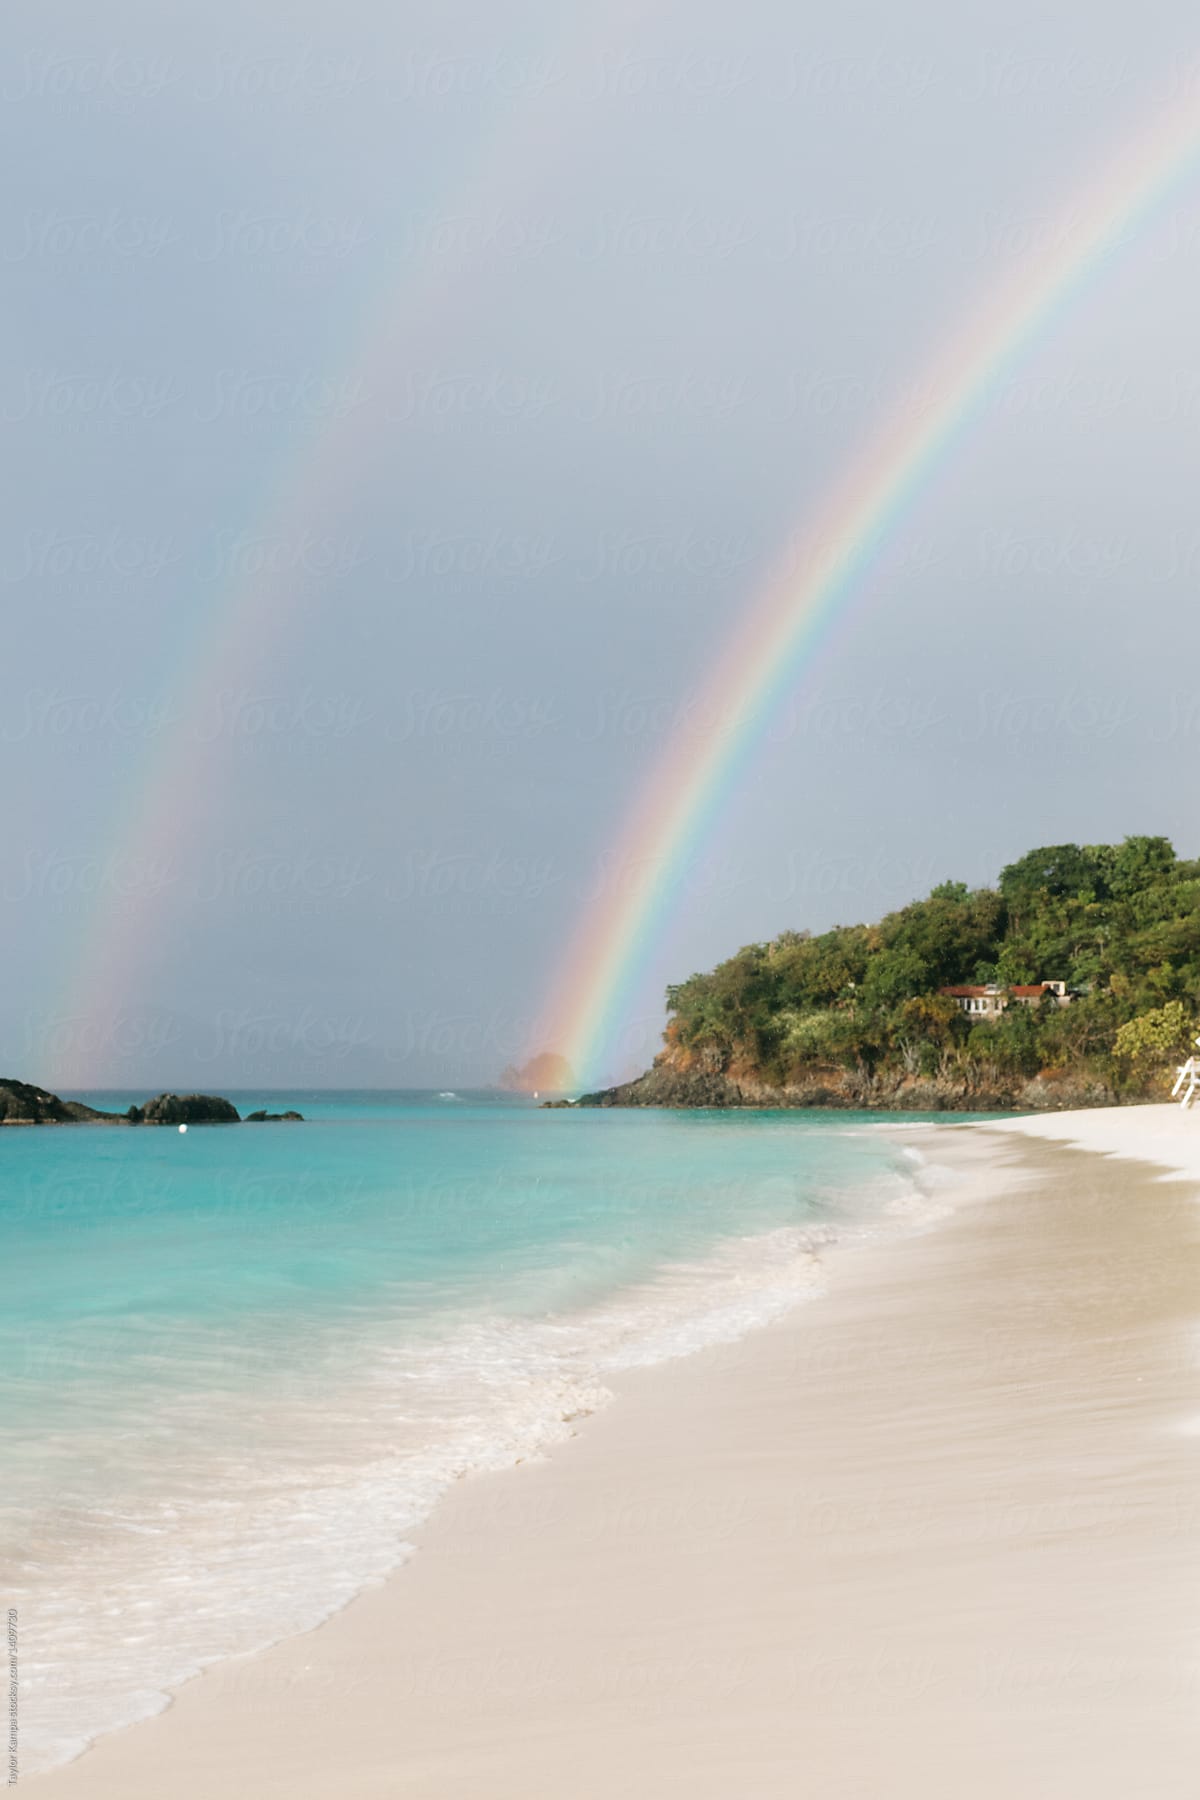 Double Rainbow on the Beach